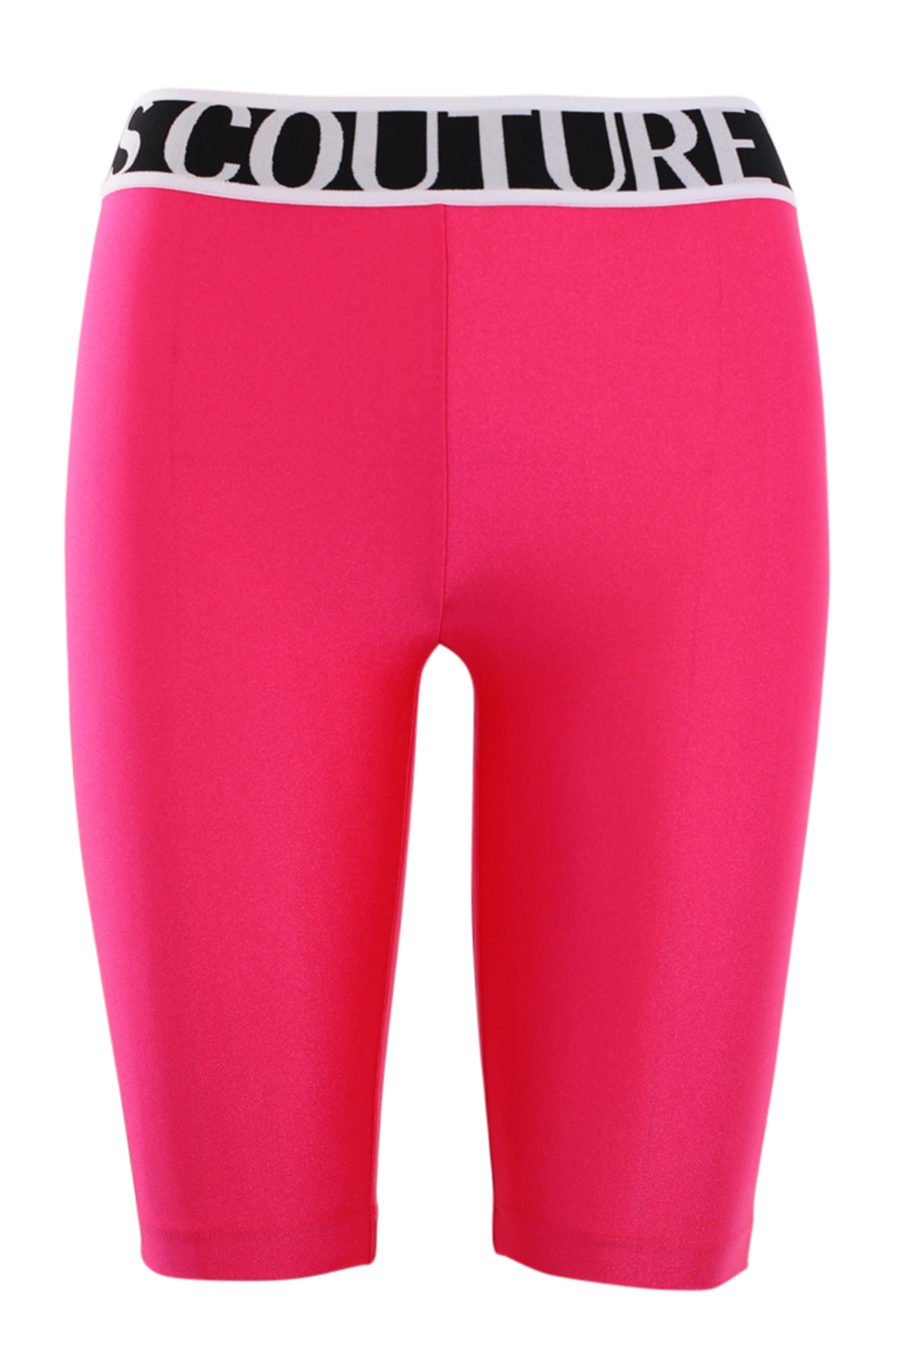 Leggings cortos rosas con logo en la cintura - IMG 0568